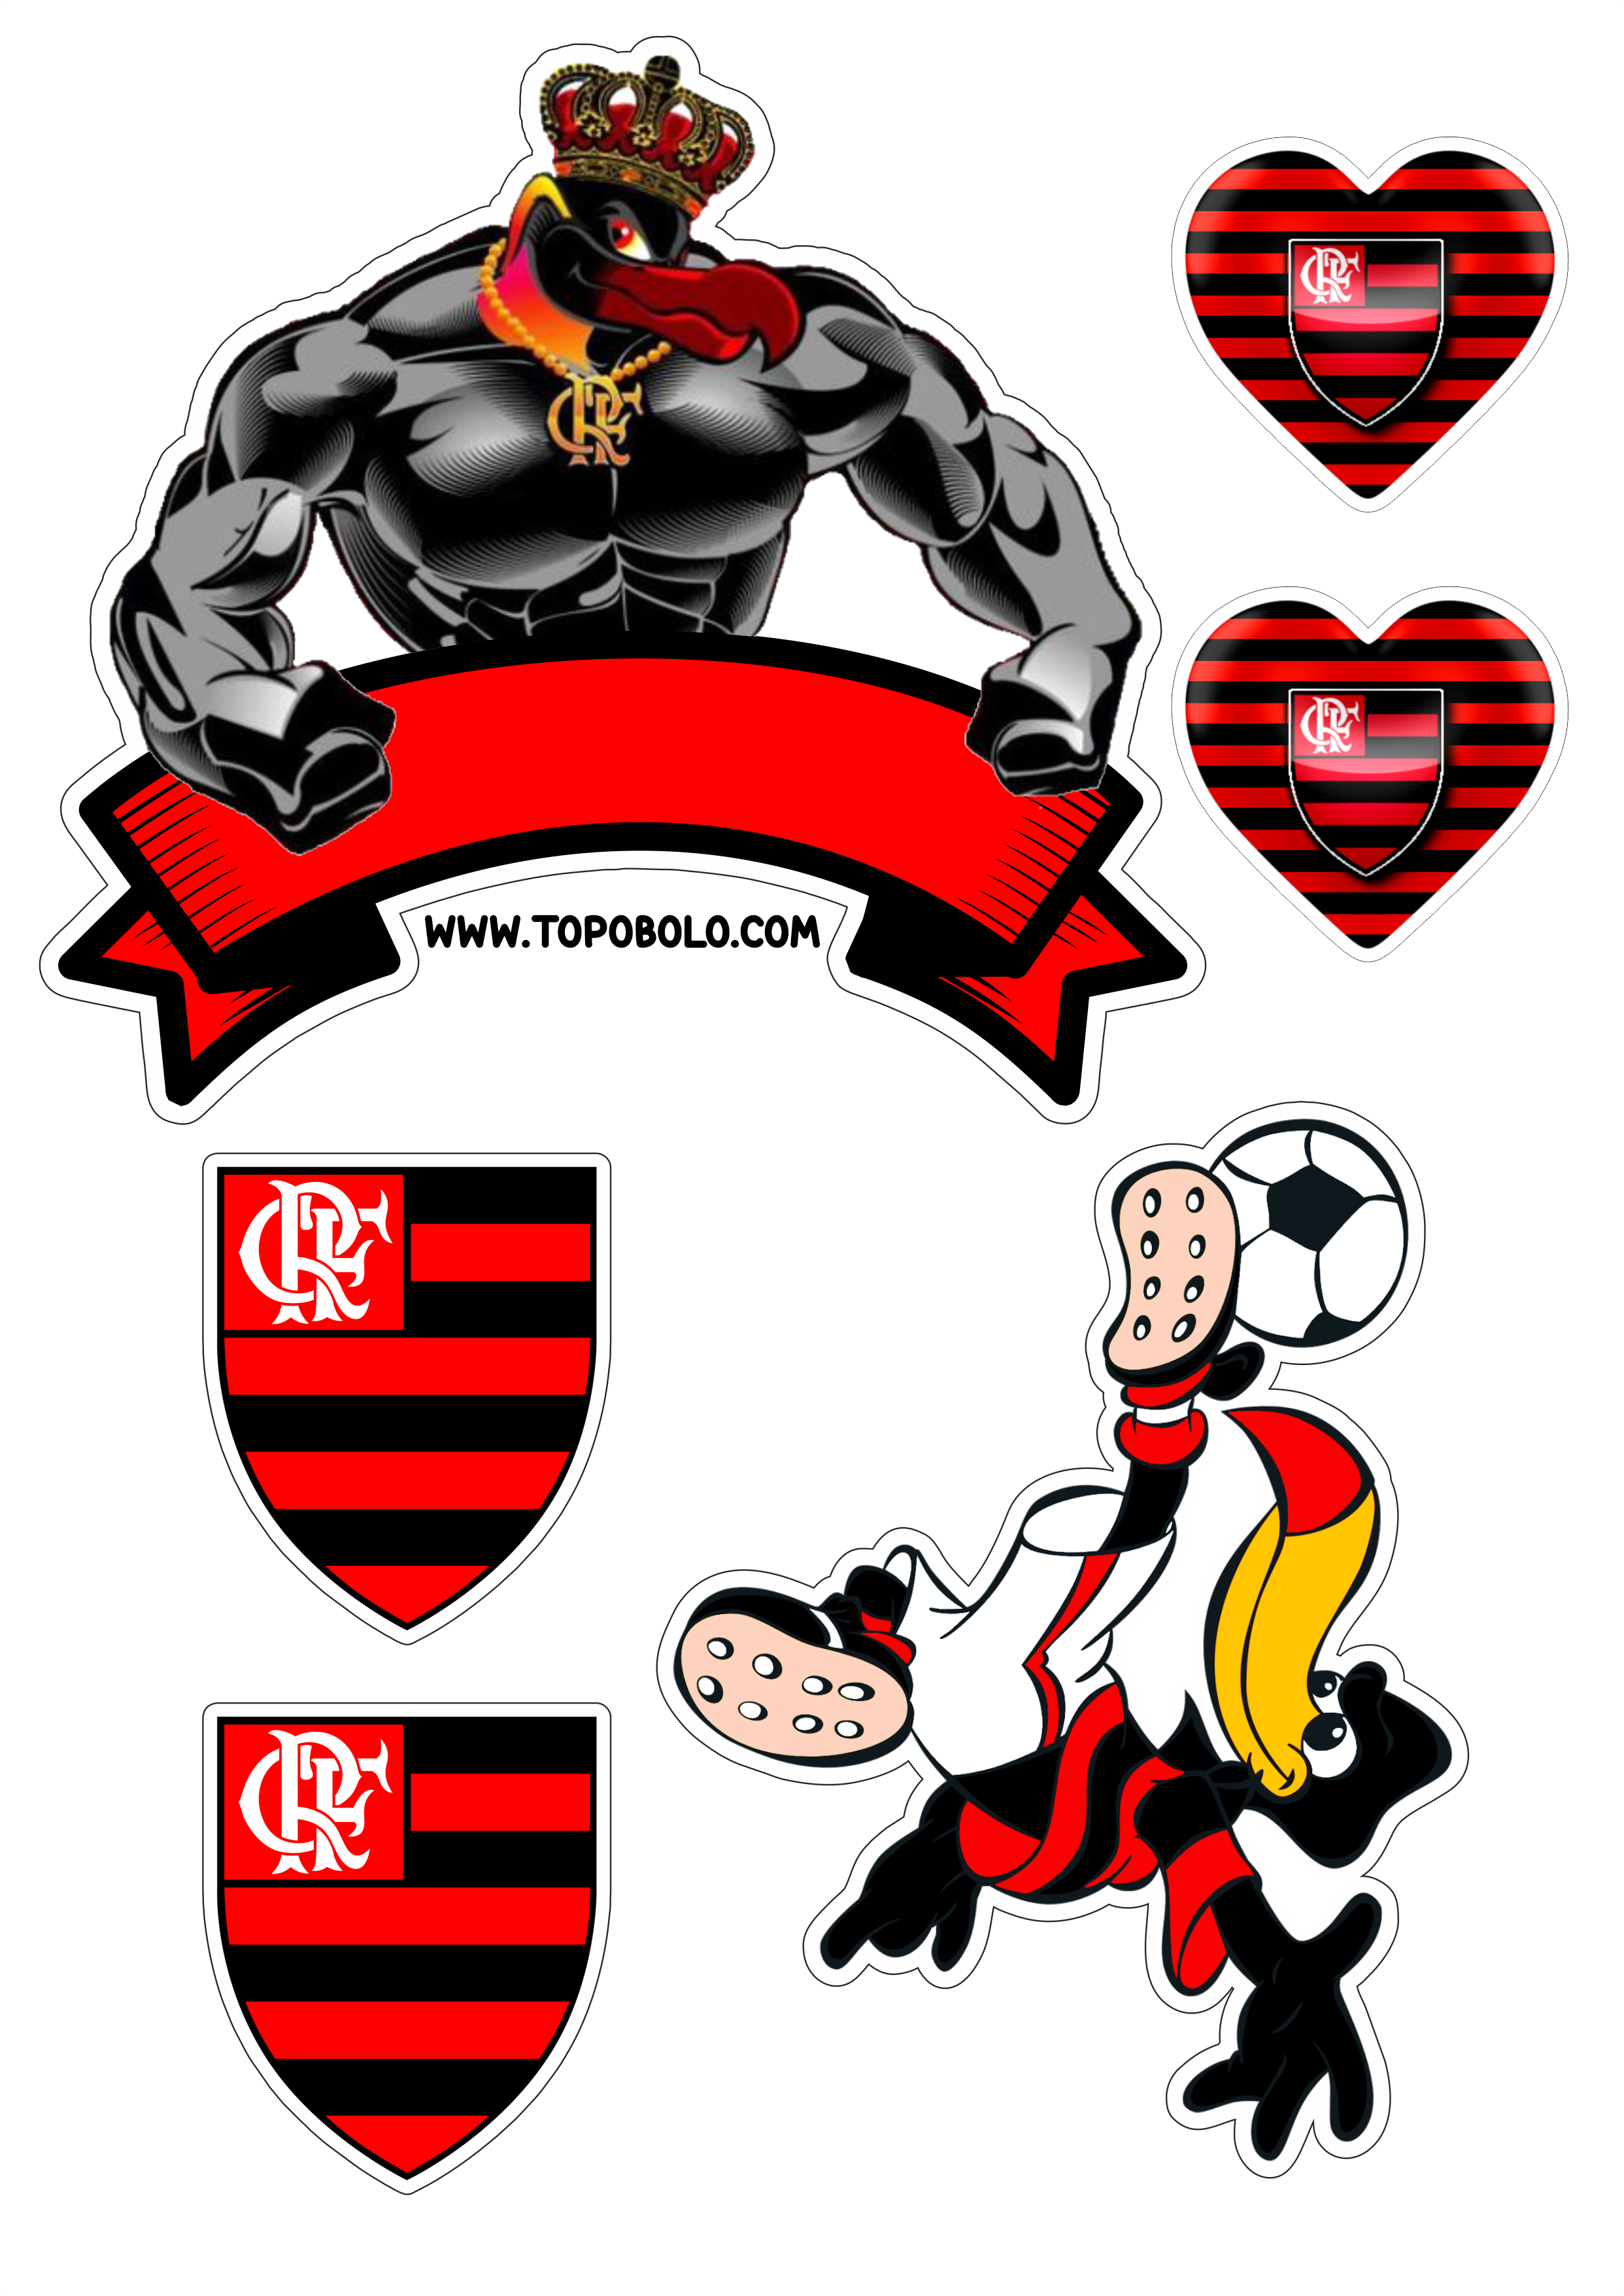 Flamengo futebol clube topo de bolo decoração de aniversário urubu mascote campeonato brasileiro png